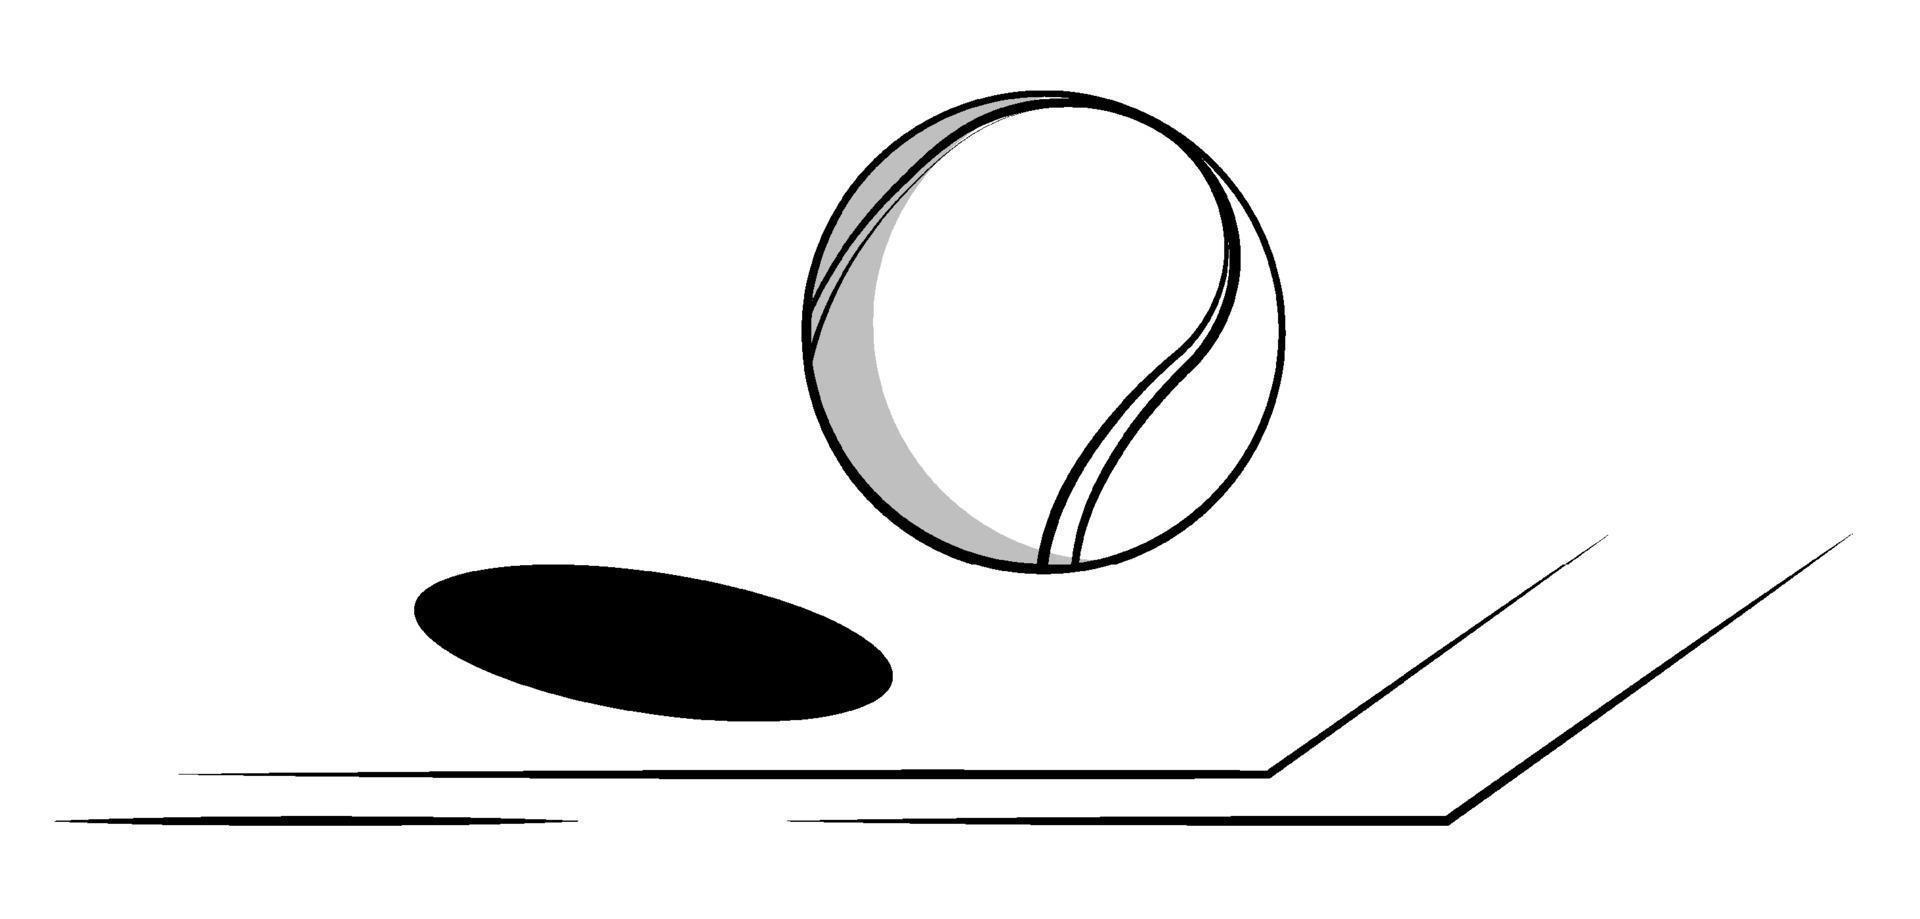 tenis pelota moscas en línea de corte. mundo tenis torneo. deporte equipo. antecedentes para diseño deporte competiciones negro y blanco contraste vector